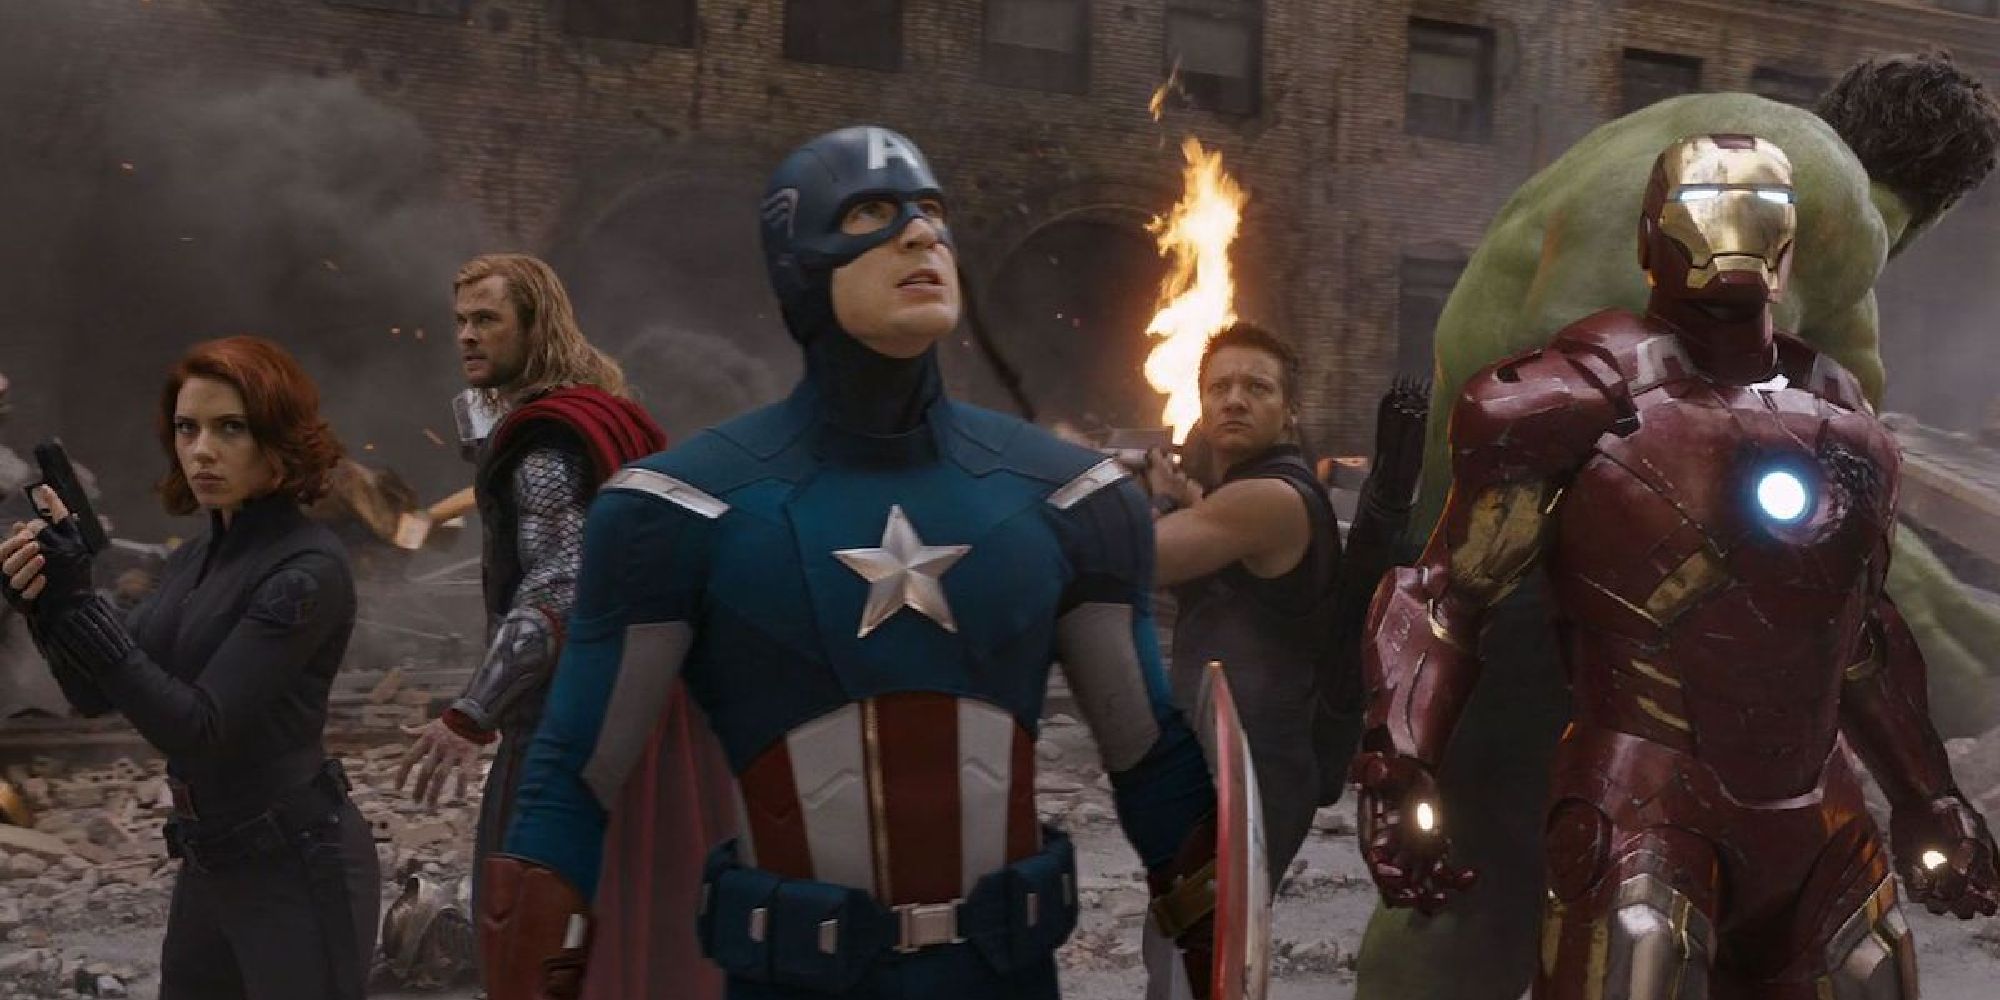 Черная вдова, Тор, Капитан Америка, Соколиный глаз, Железный человек и Халк в битве за Нью-Йорк в 2012 году.